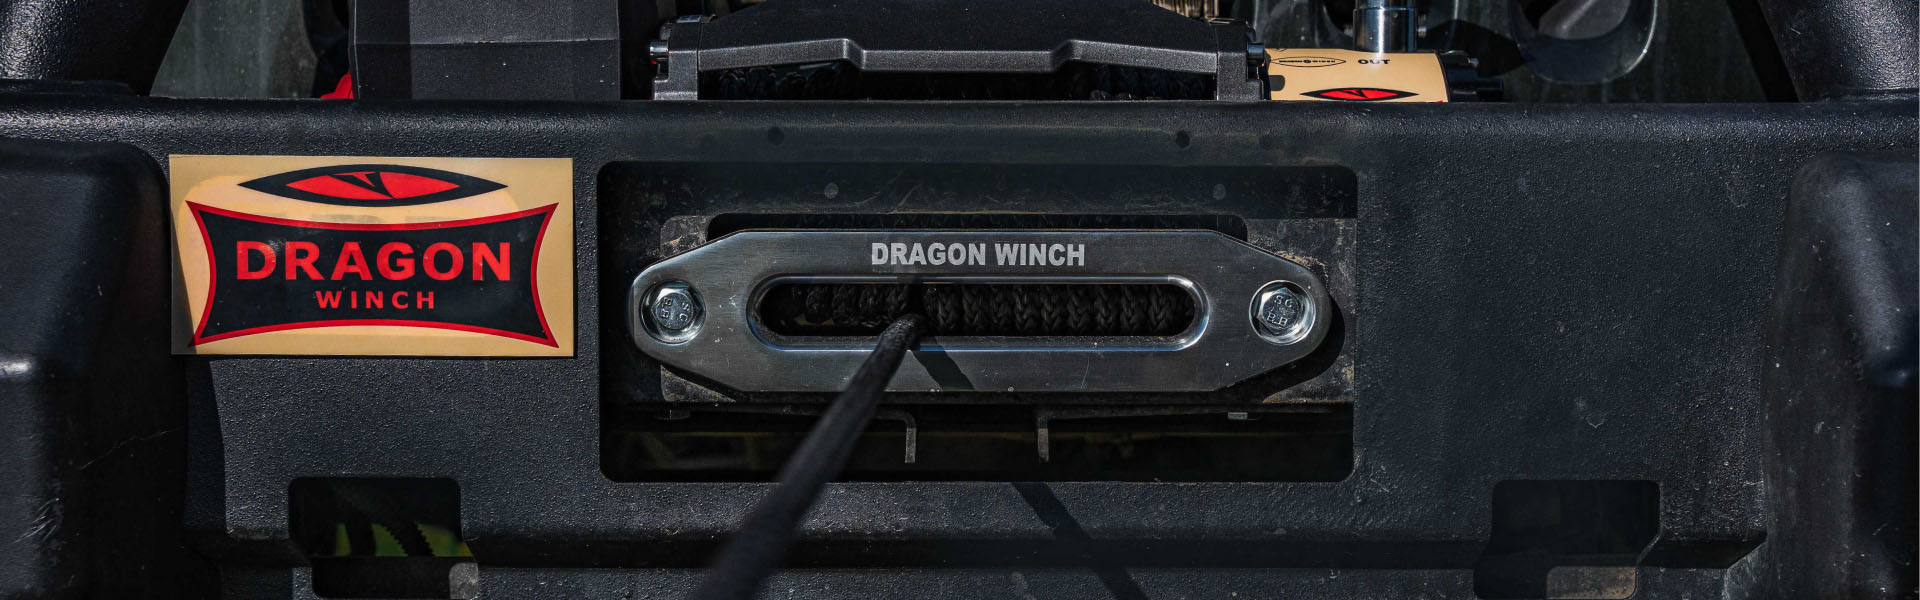 Dragon Winch DWH 3500 HD